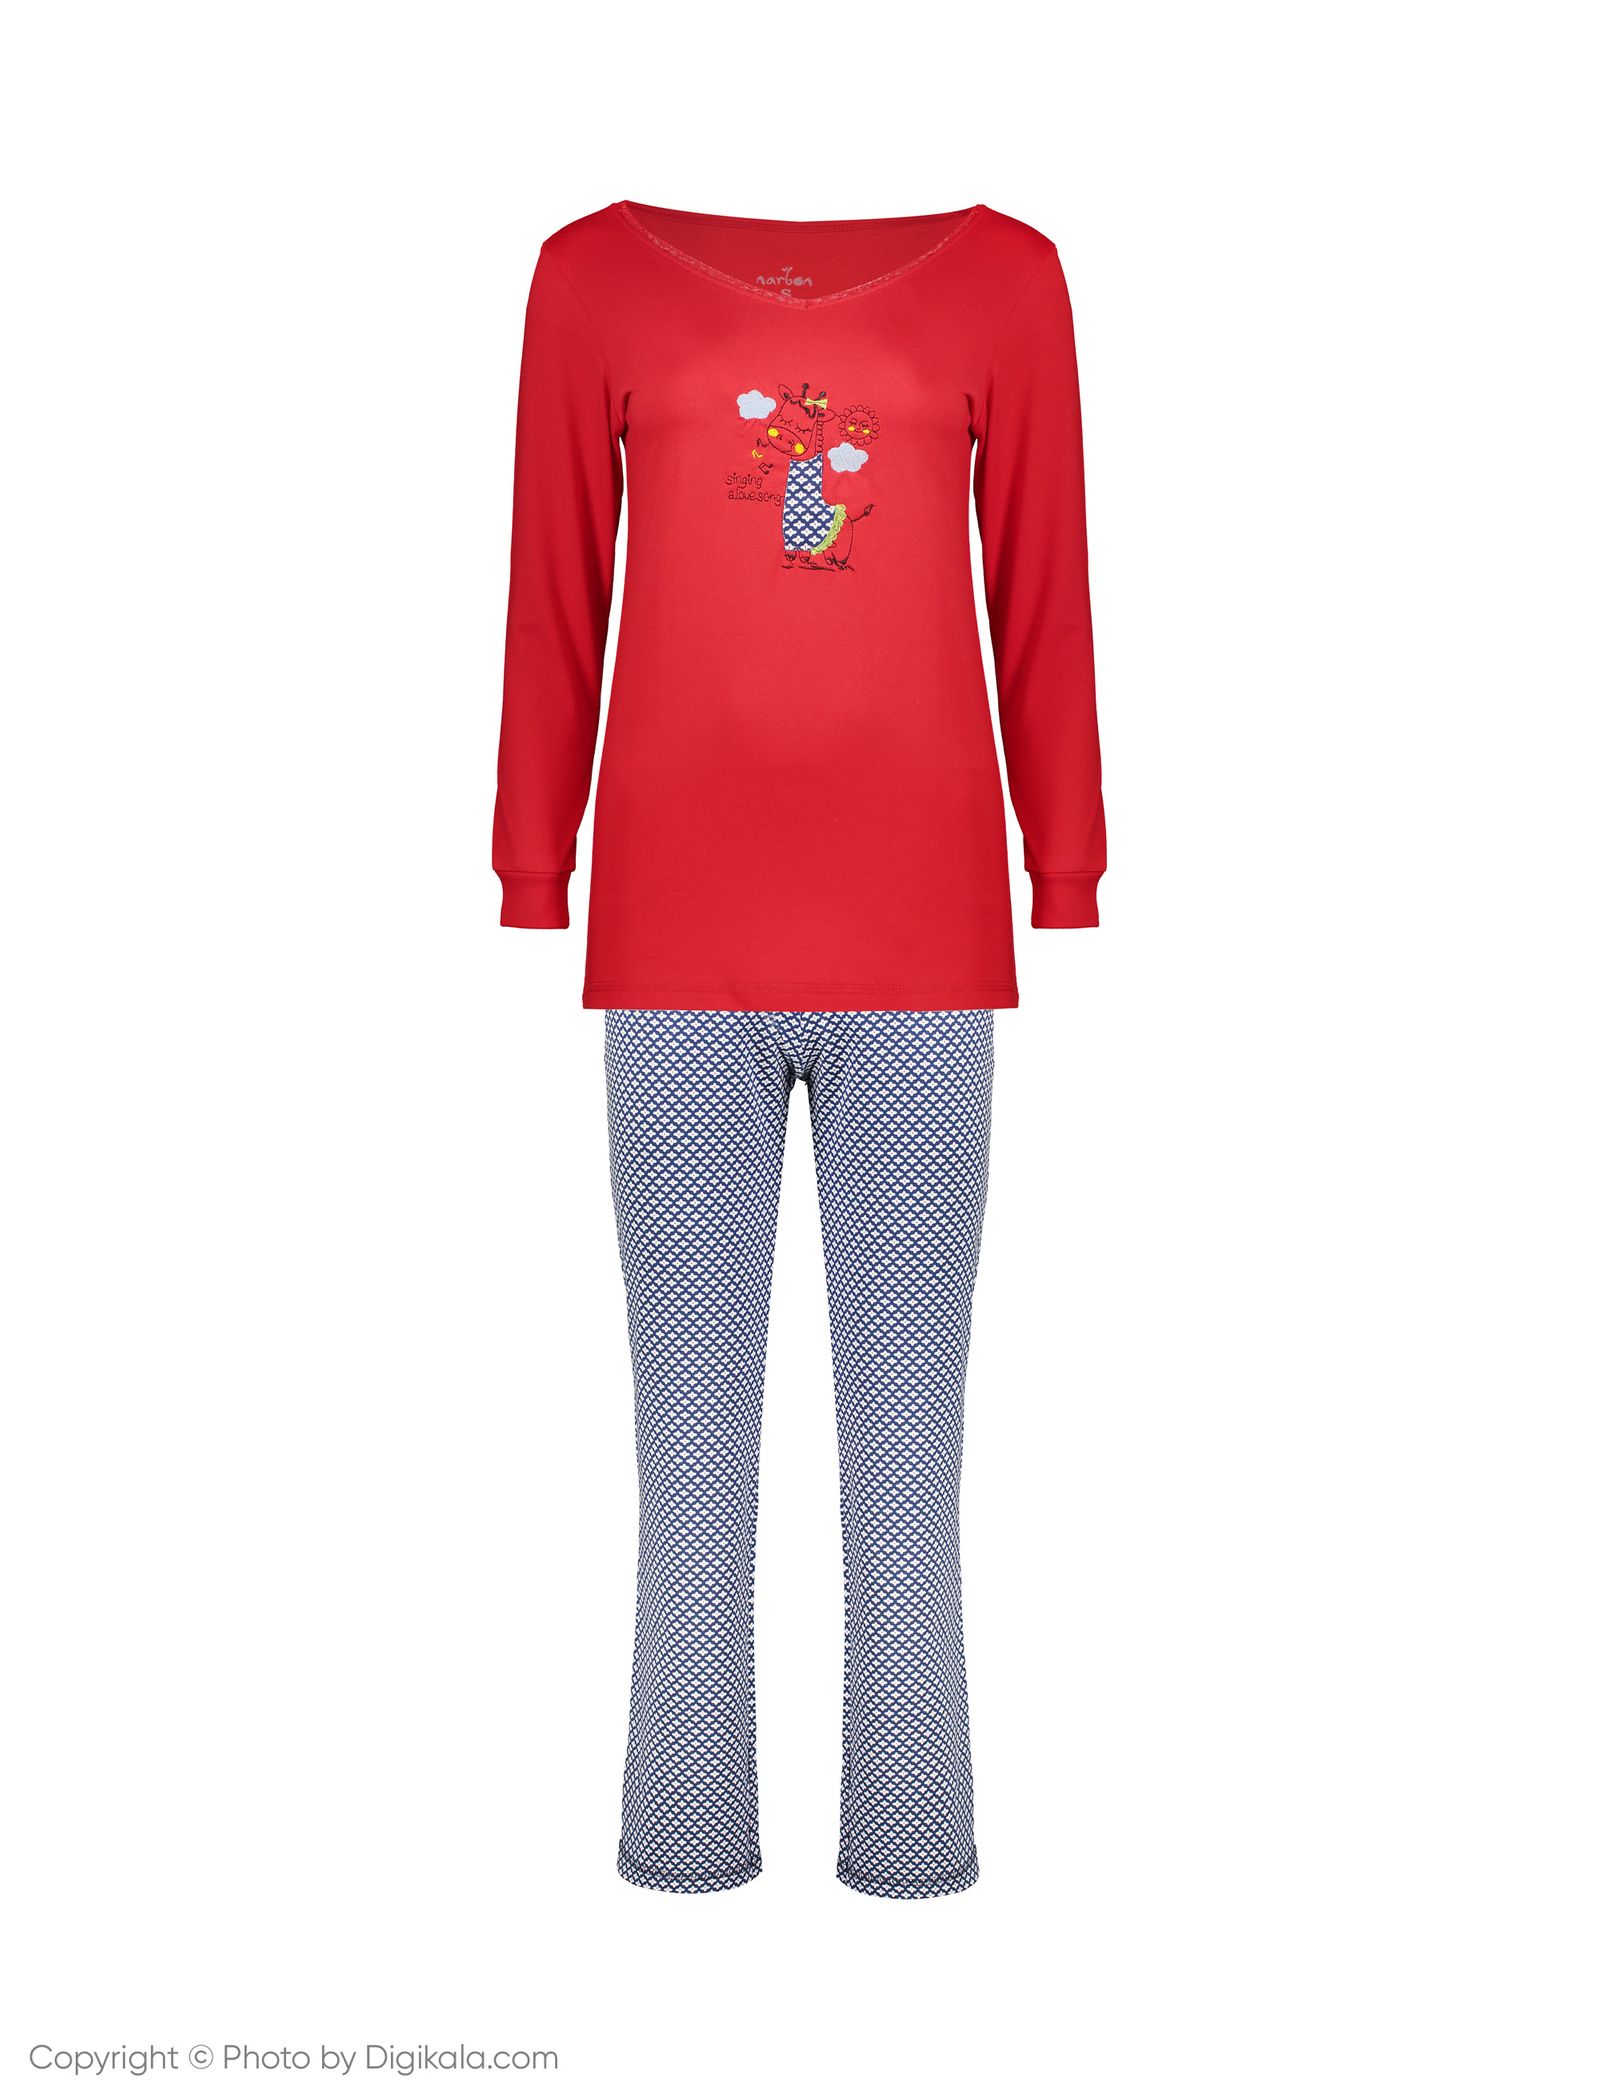 ست تی شرت و شلوار راحتی زنانه ناربن مدل 1521168-72 - قرمز - 2